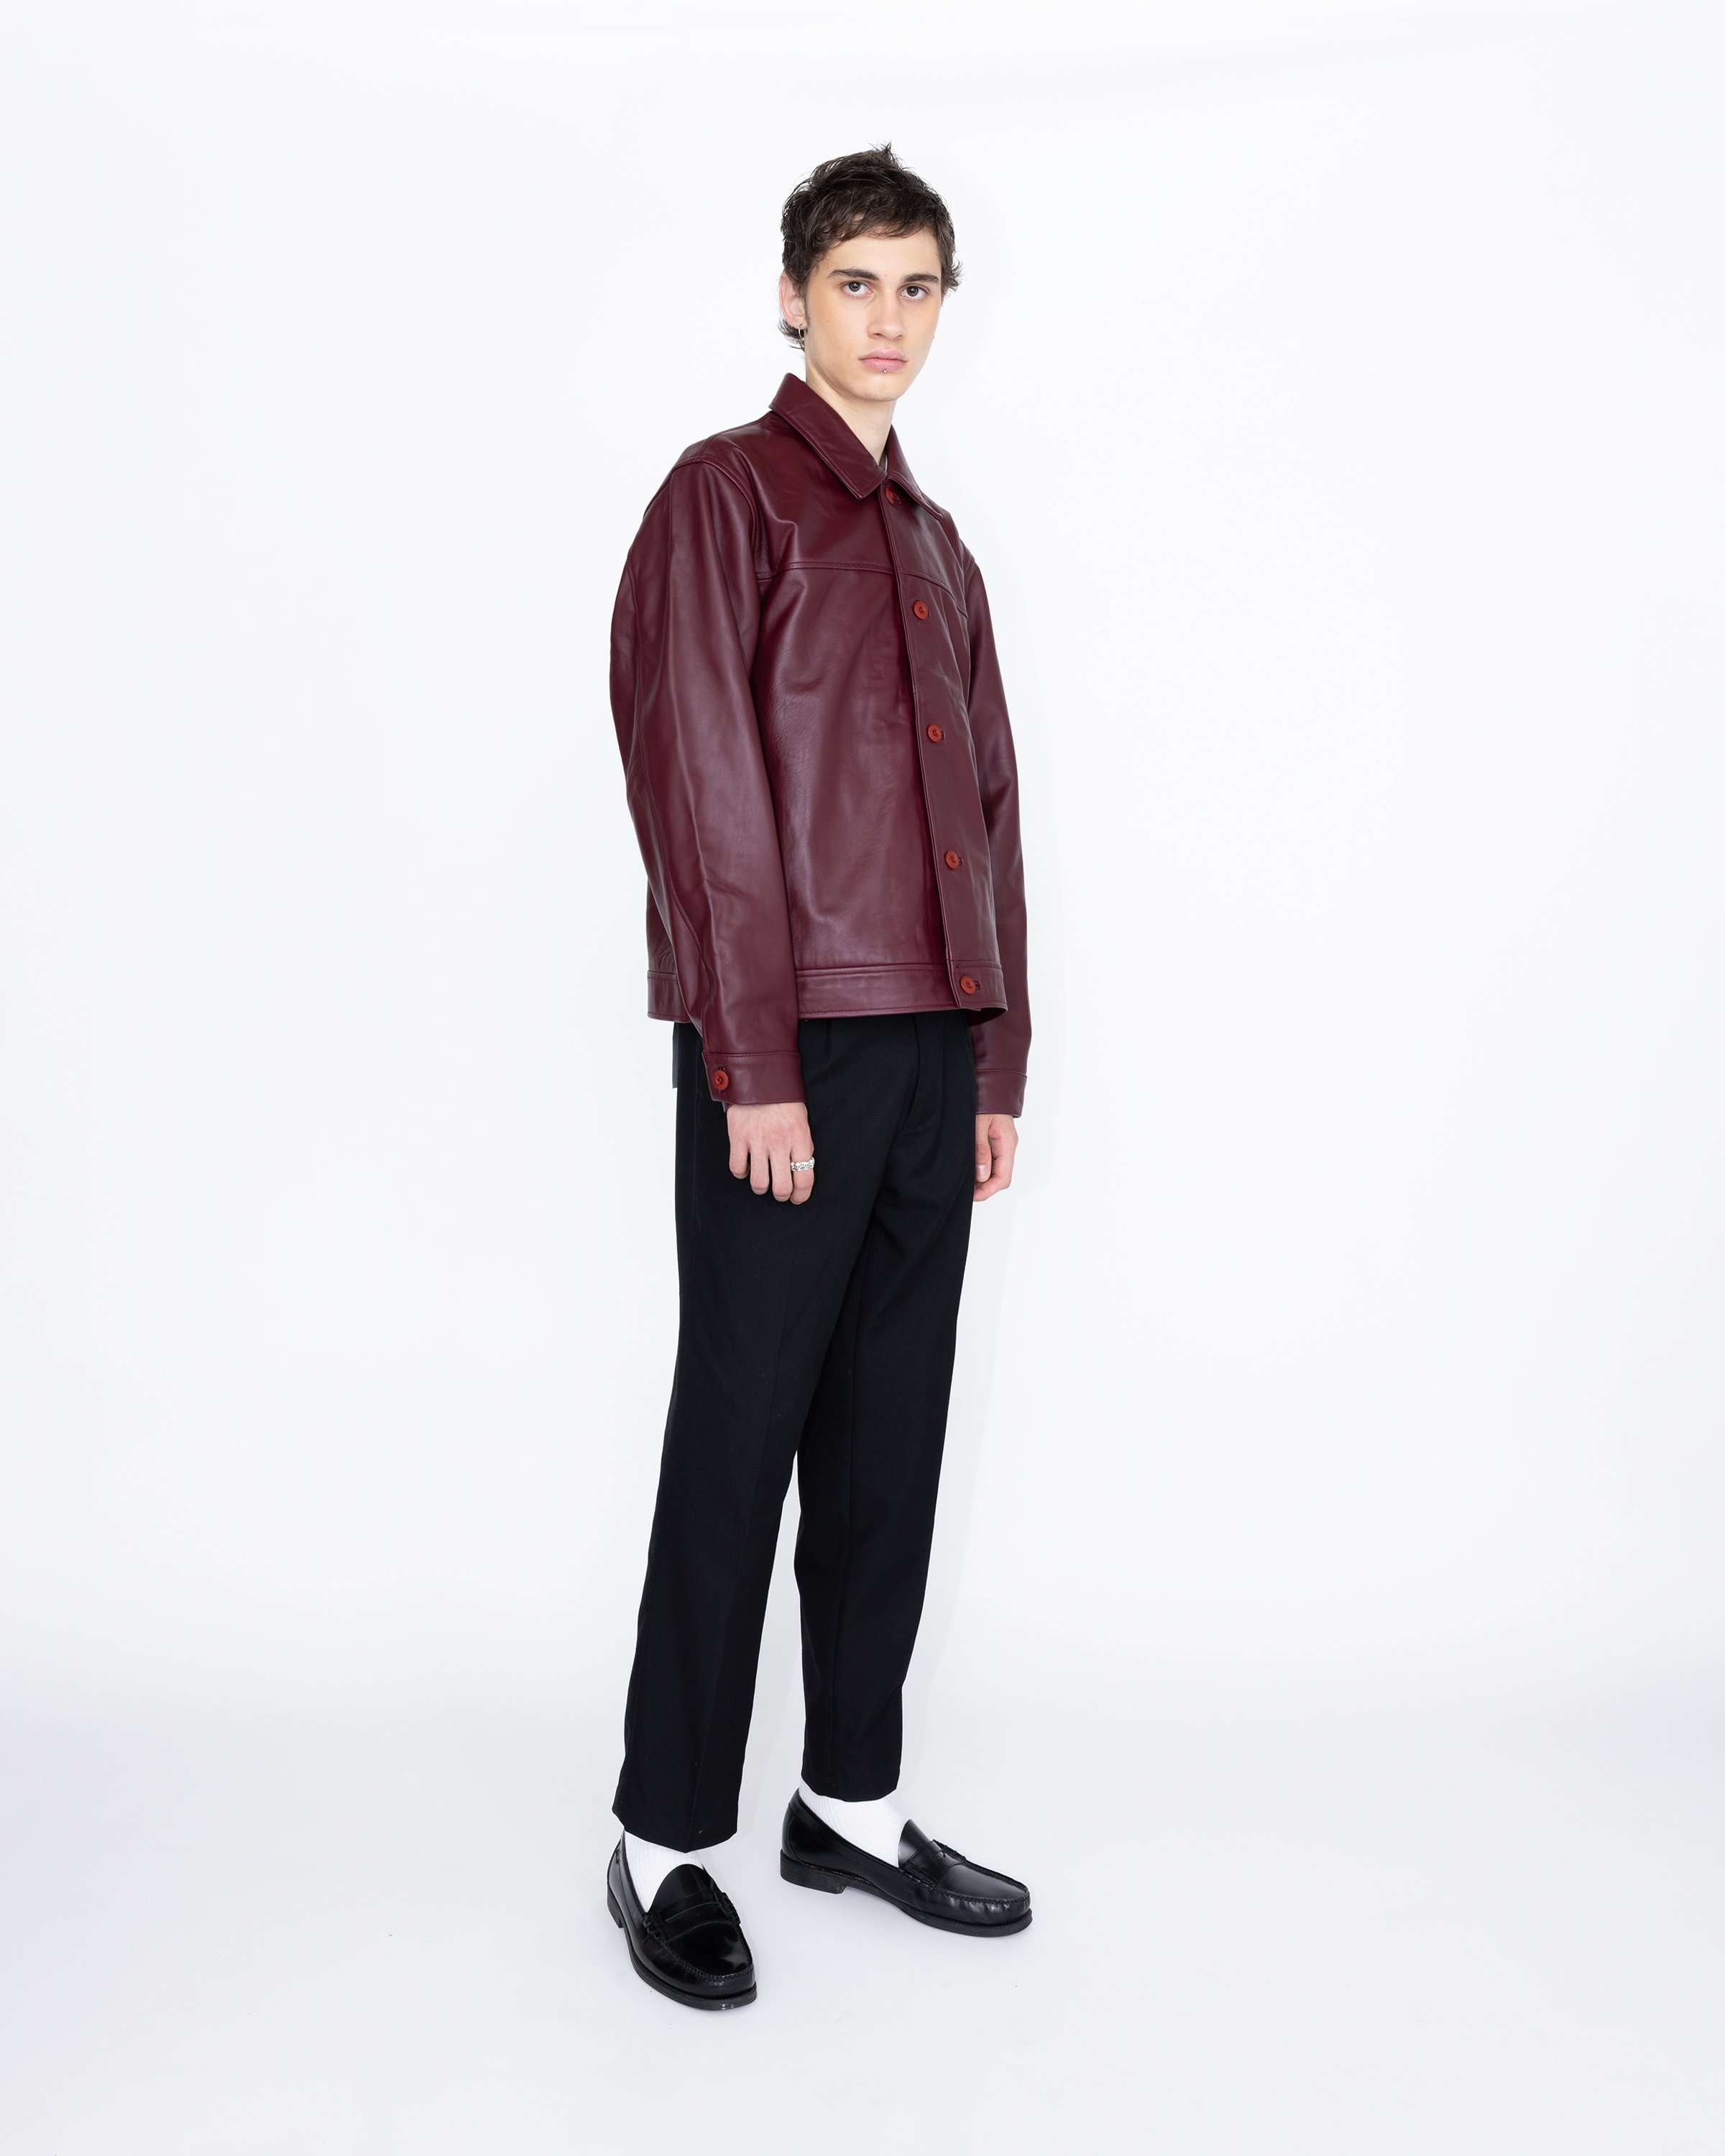 Highsnobiety HS05 - Leather Jacket Burgundy - Clothing - Red - Image 4